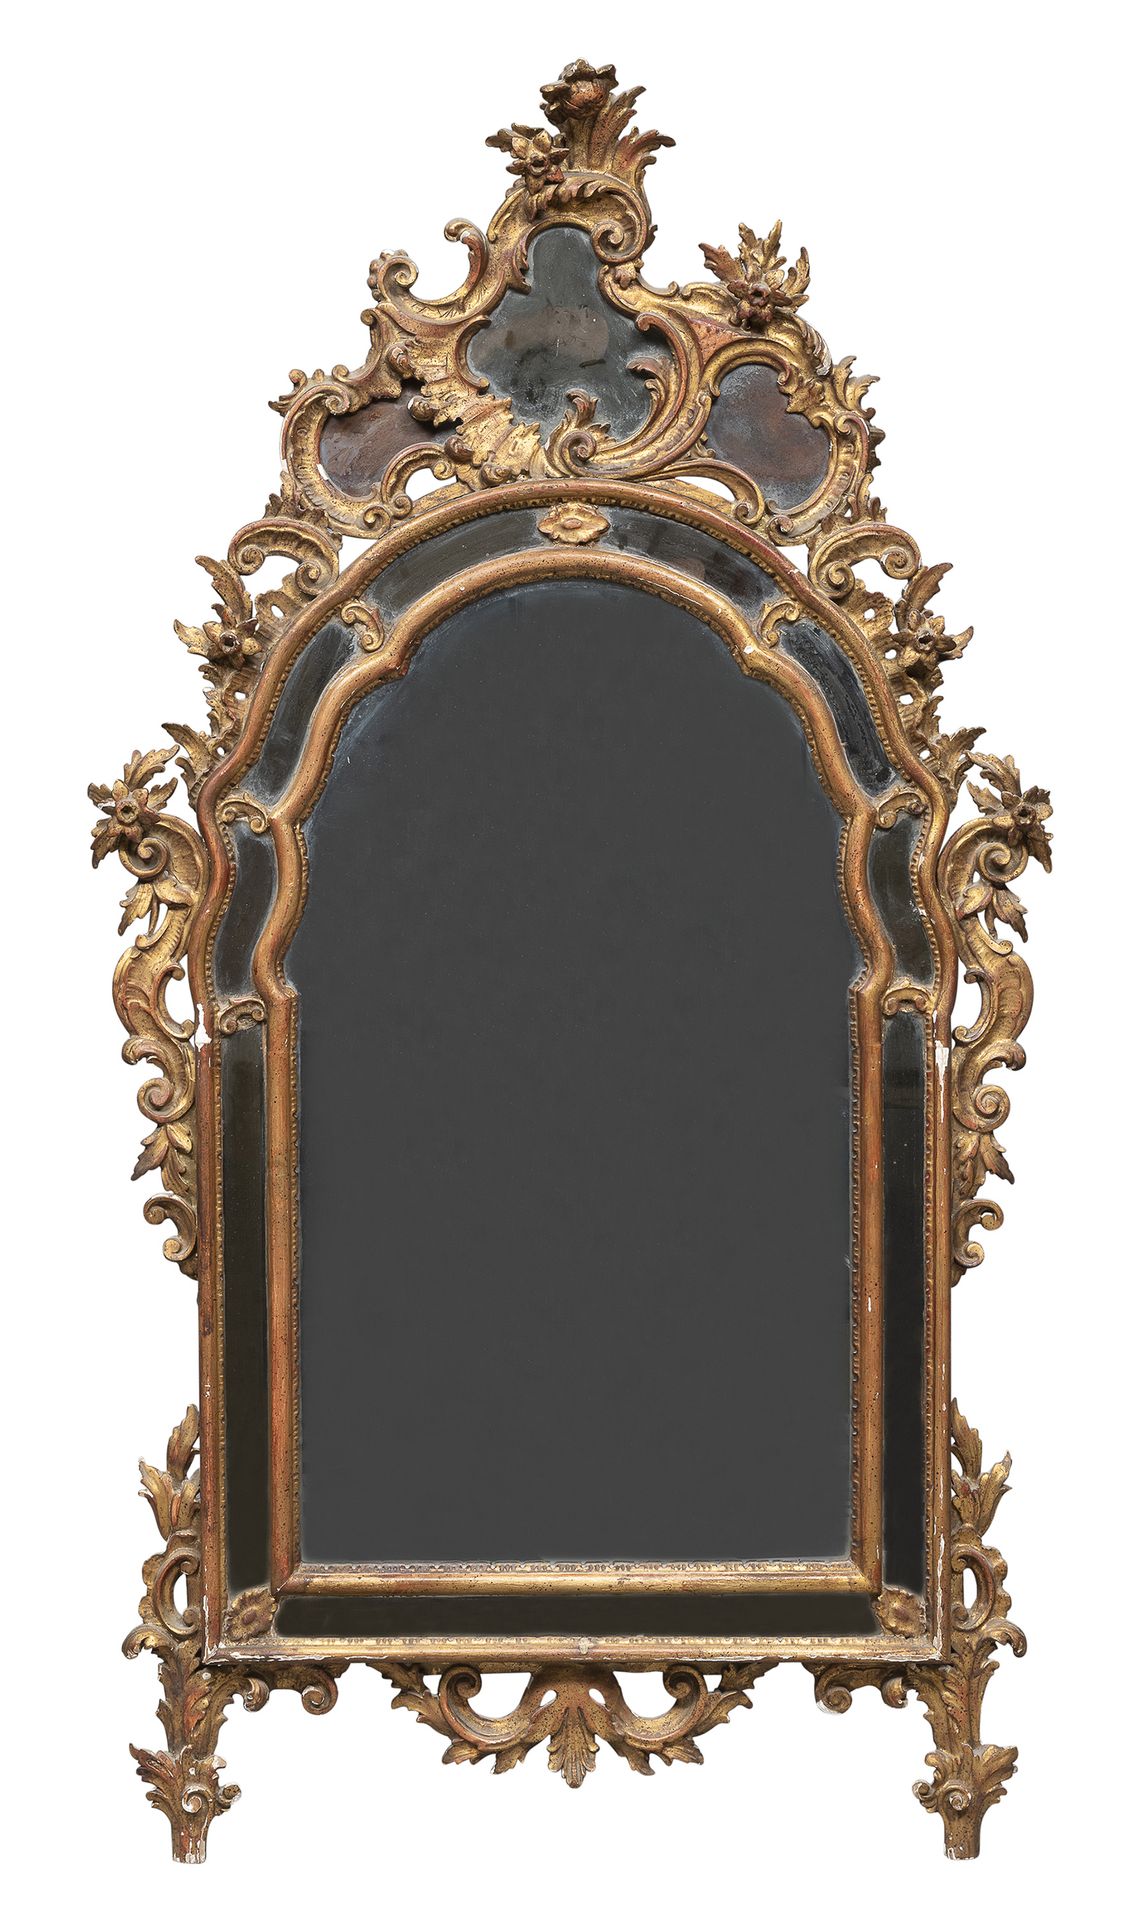 Null MIROIR EN BOIS DORÉ, GÊNES FIN 19ÈME SIÈCLE

De style XVIIIe siècle, miroir&hellip;